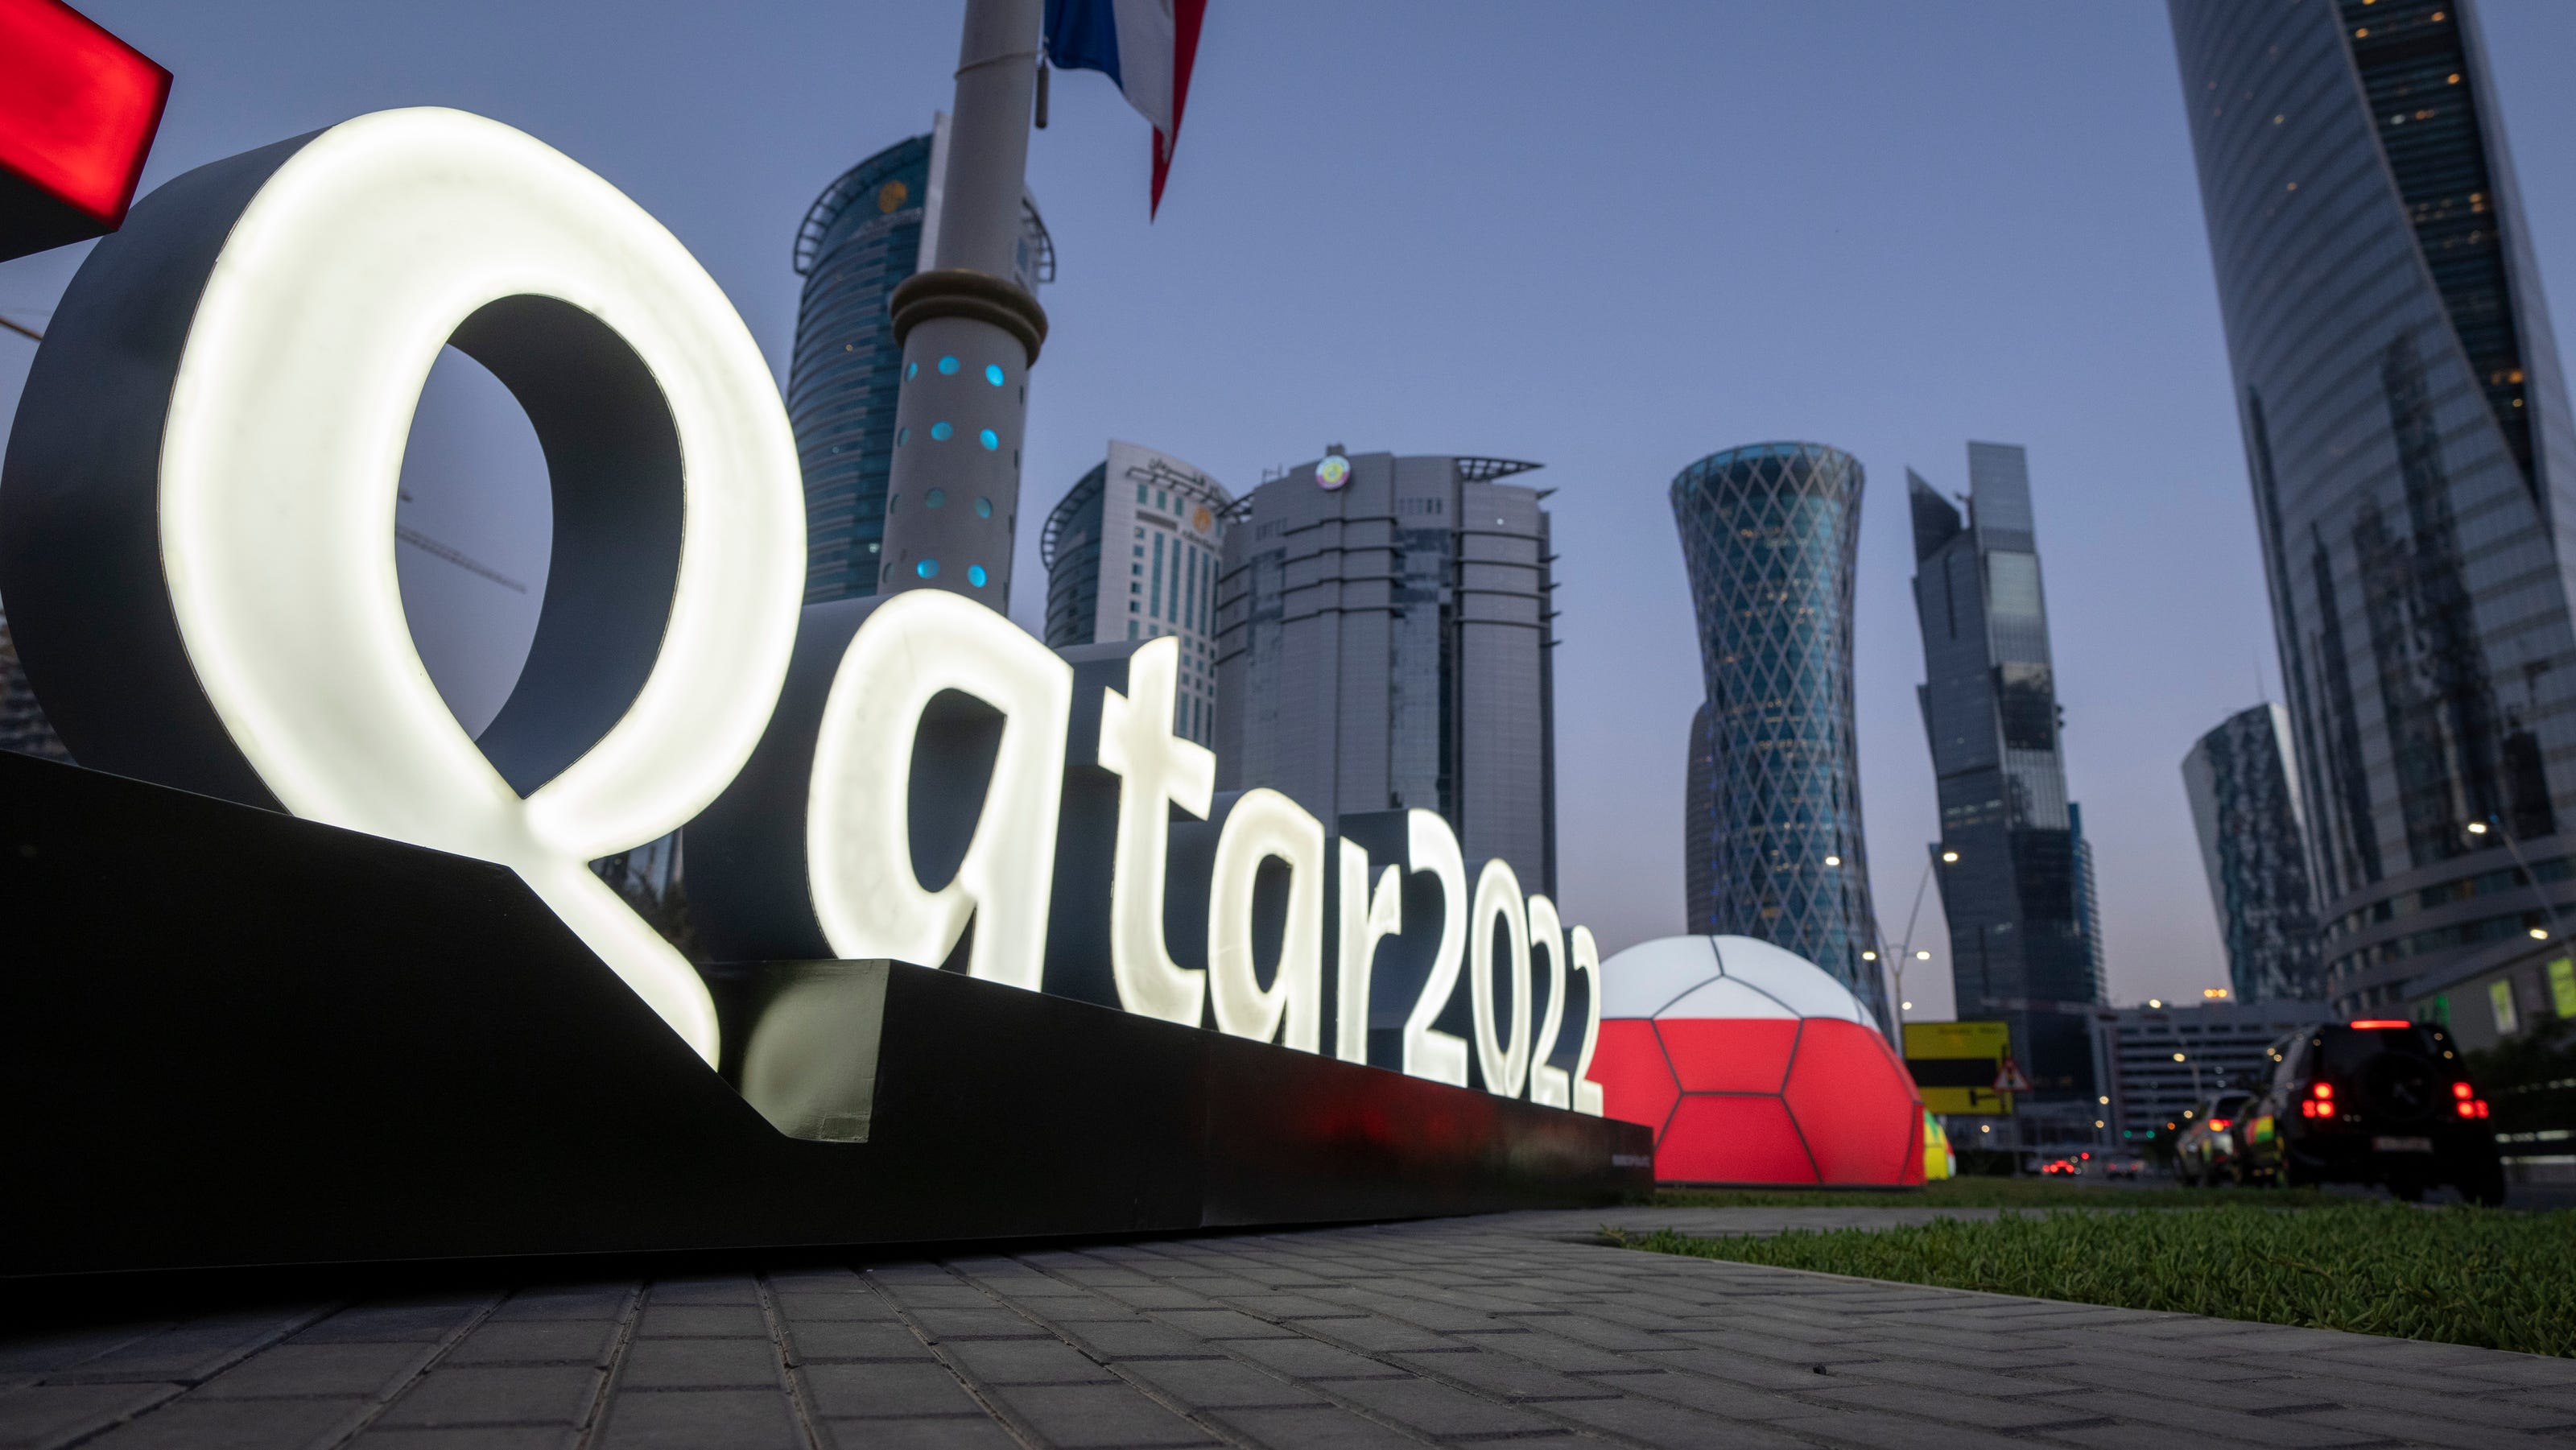 Fifa qatar. ФИФА 2022 Катар. ФИФА ворлд кап Катар 2022.